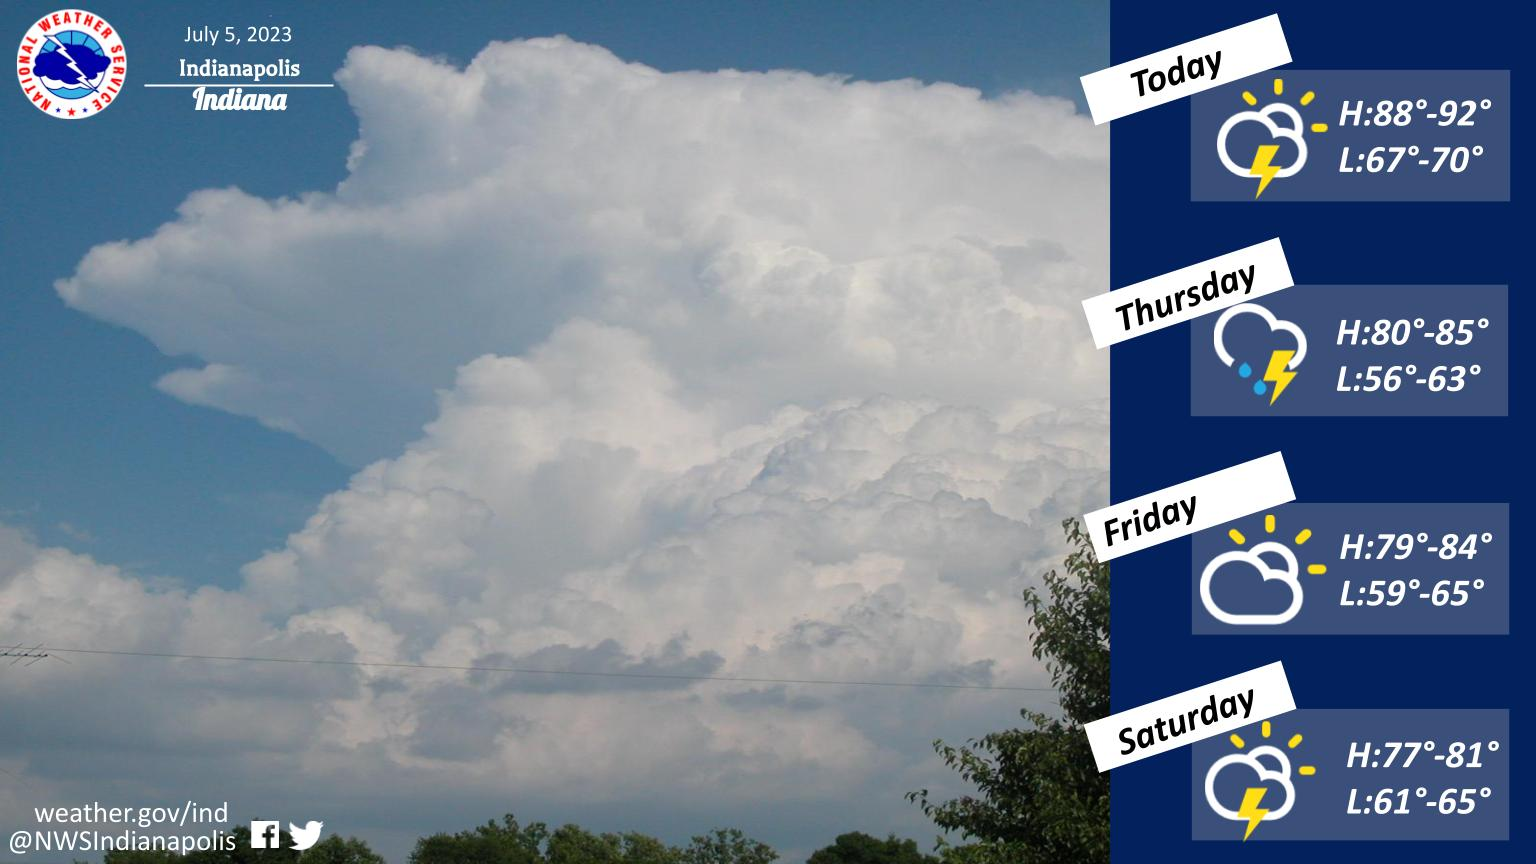 July 5, 2023, Indianapolis, Indiana Weather Forecast